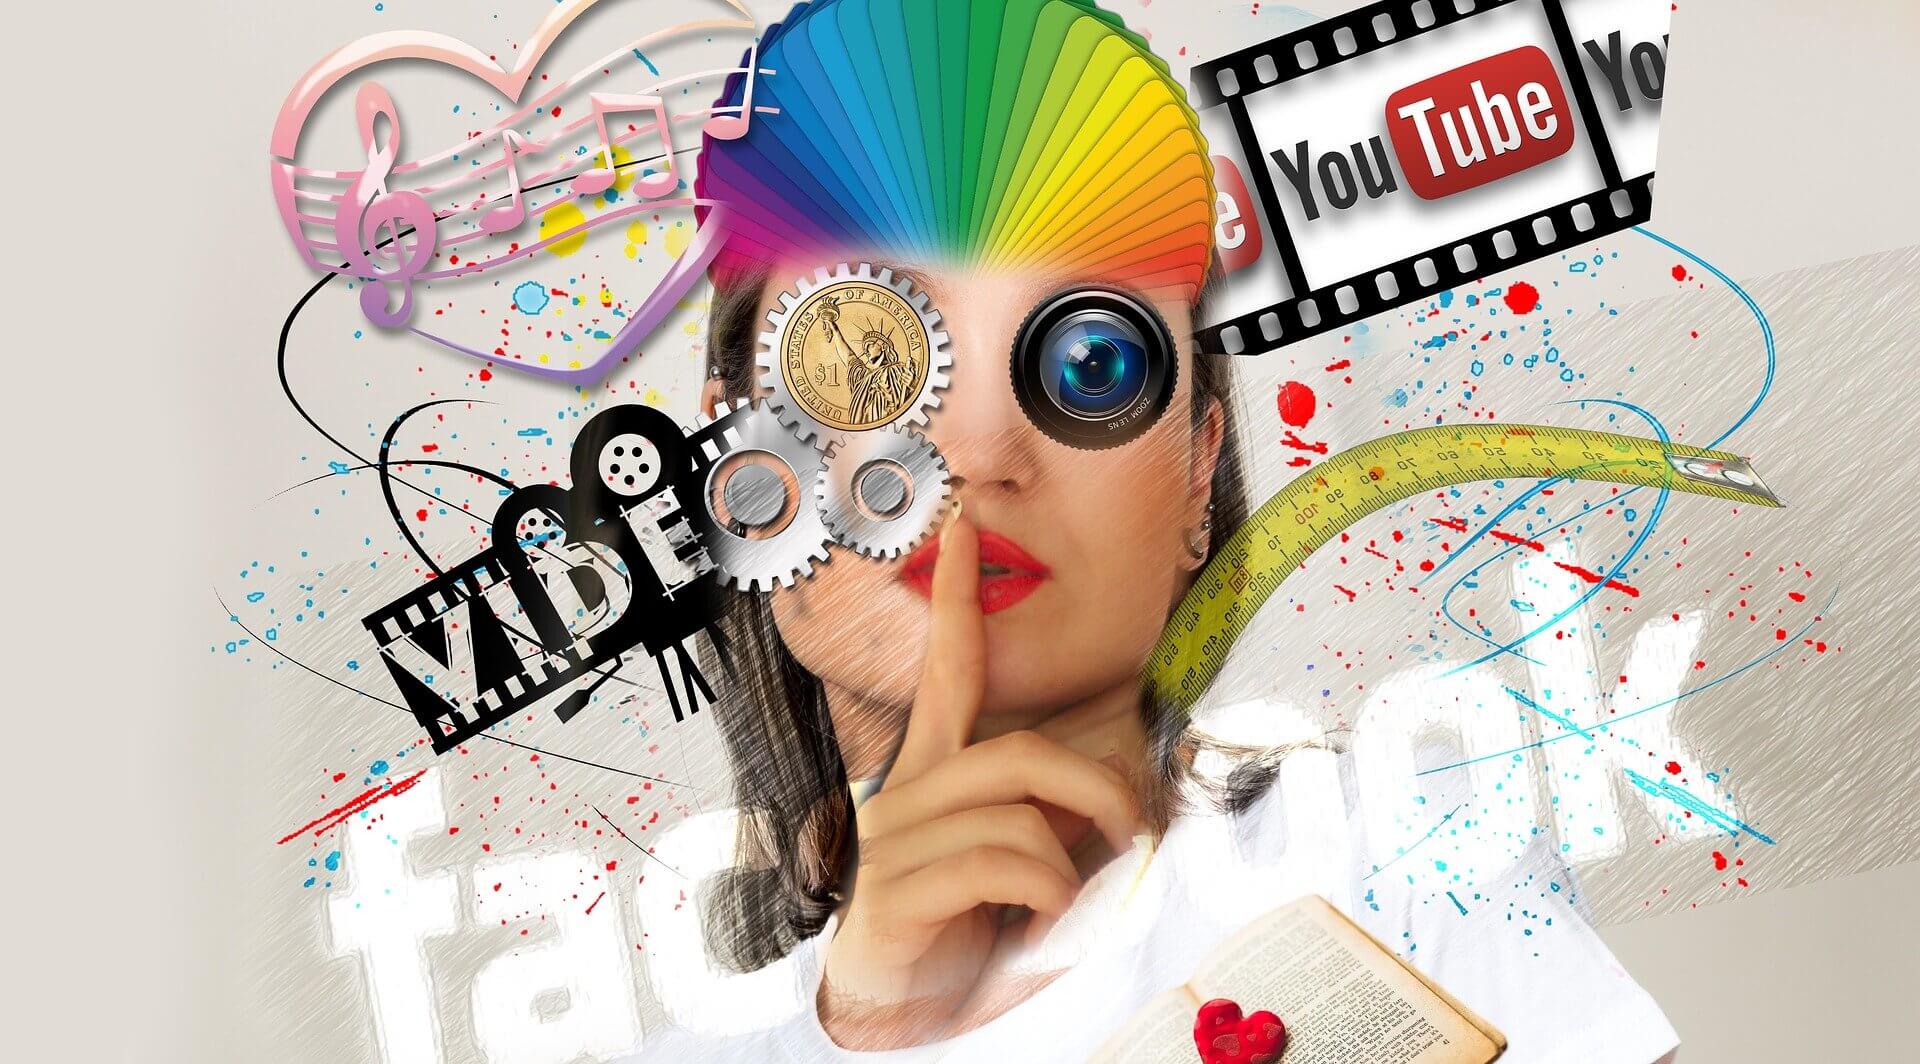 regras de publicidade para influencers - arte gráfica com diversos elementos, contento um mulher fazendo um sinal de silêncio com diversos logos de redes sociais, apelta de cores, produtos diversos etc.